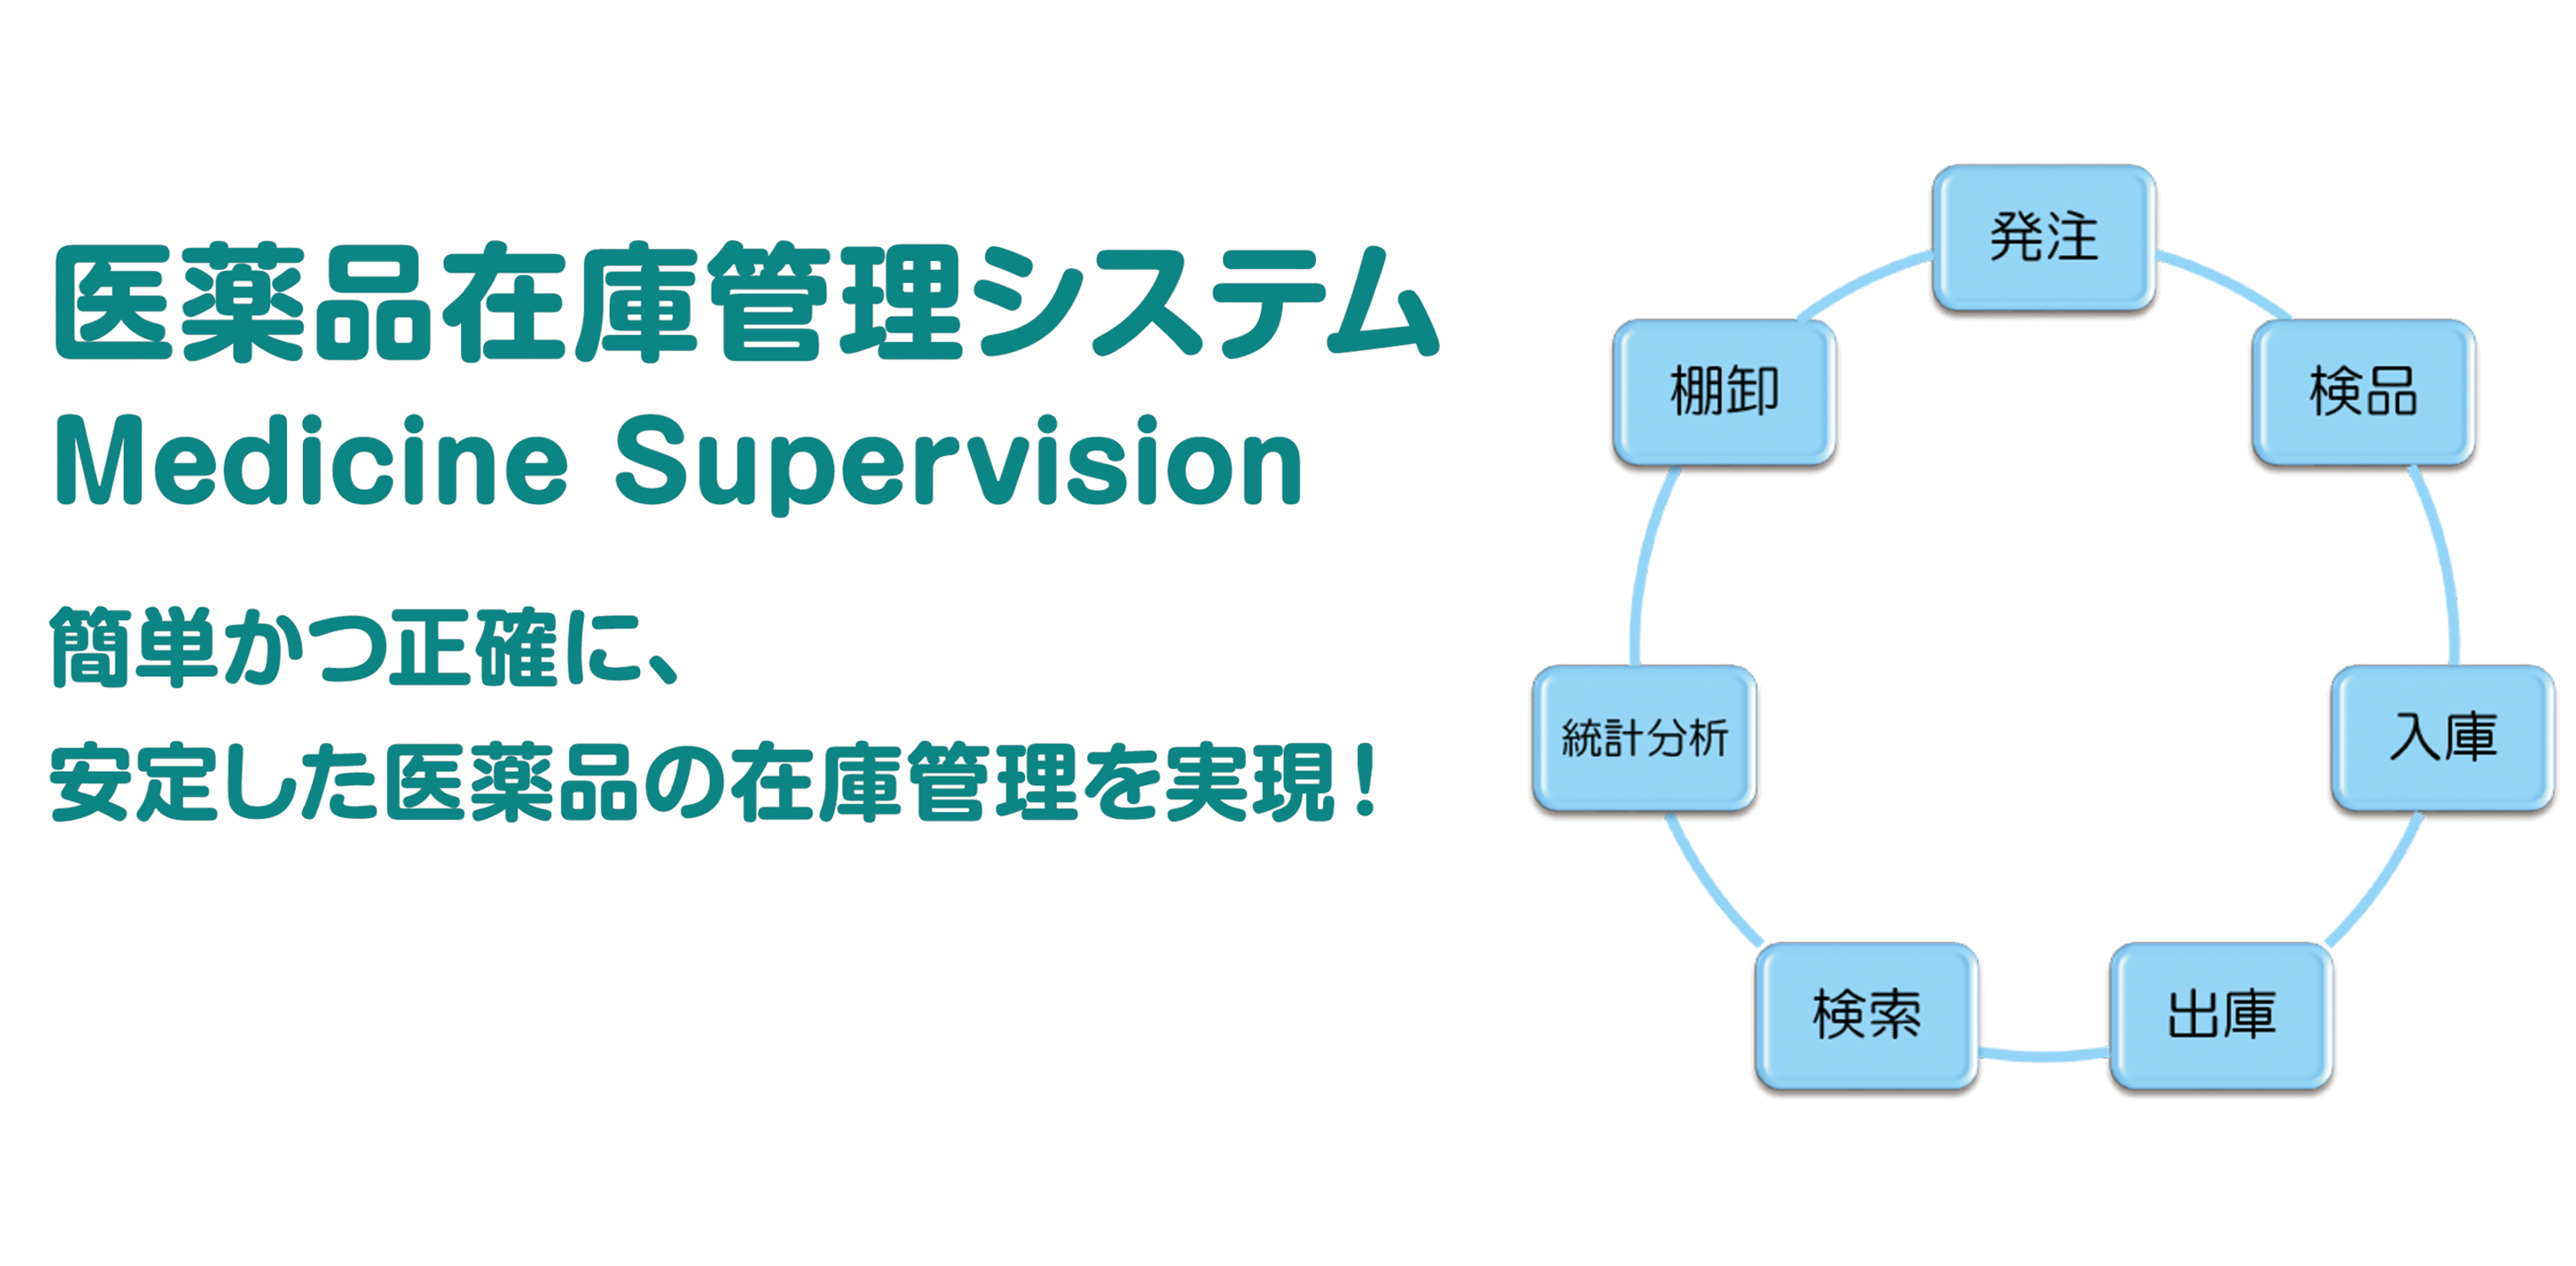 医薬品在庫管理システム Medicine Supervision 簡単かつ正確に、安定した医薬品の在庫管理を実現！